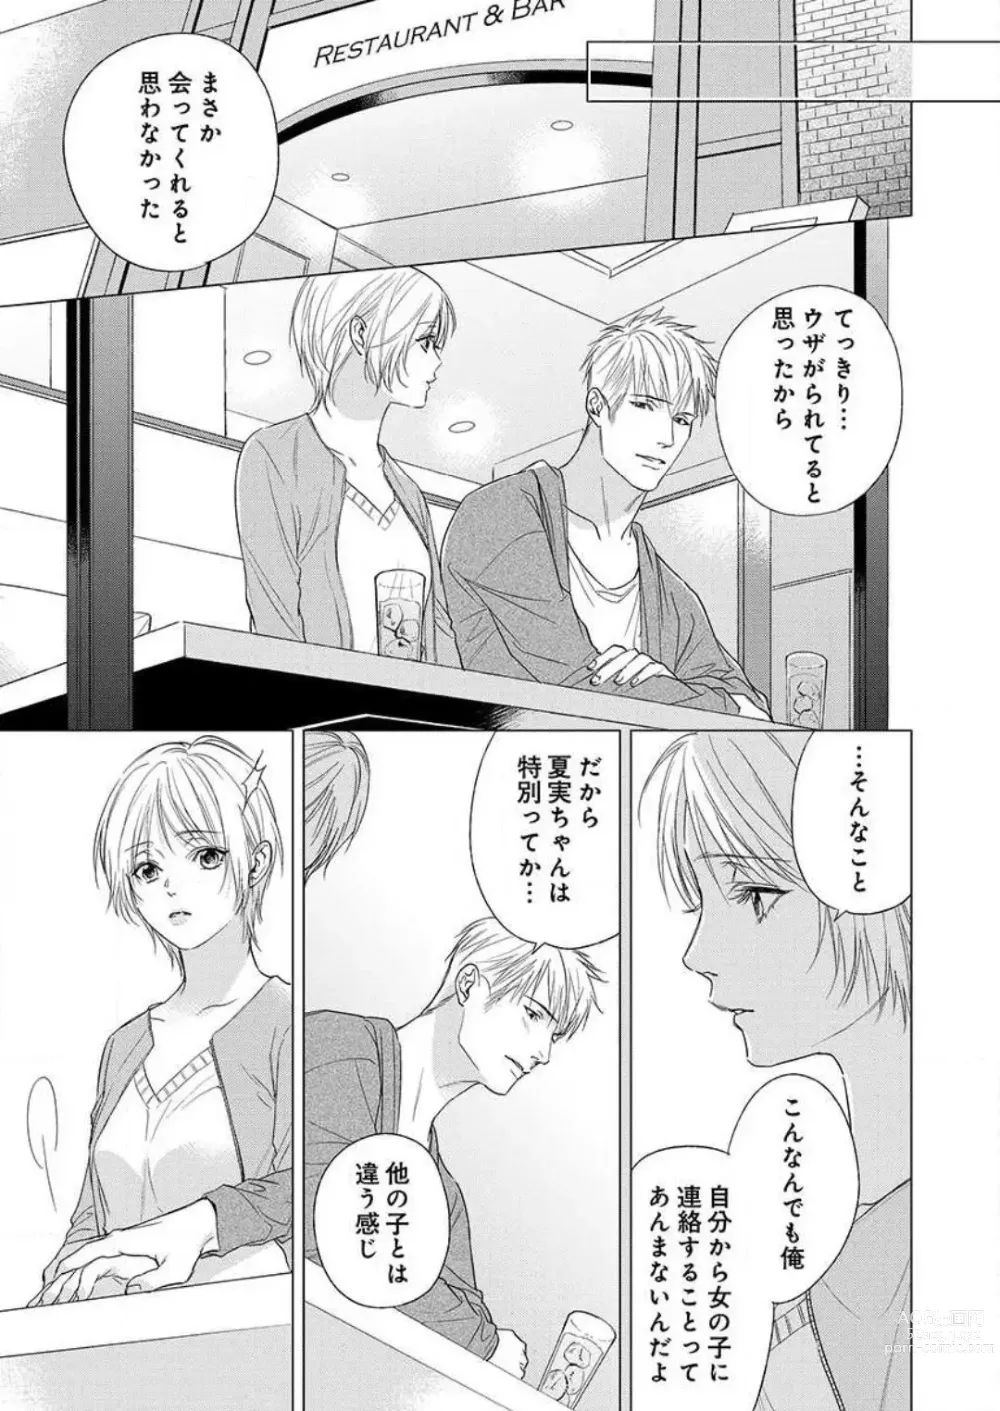 Page 140 of manga Furin Shoya, Yurusarenai Koi ni Oboreru Karada... 1-6